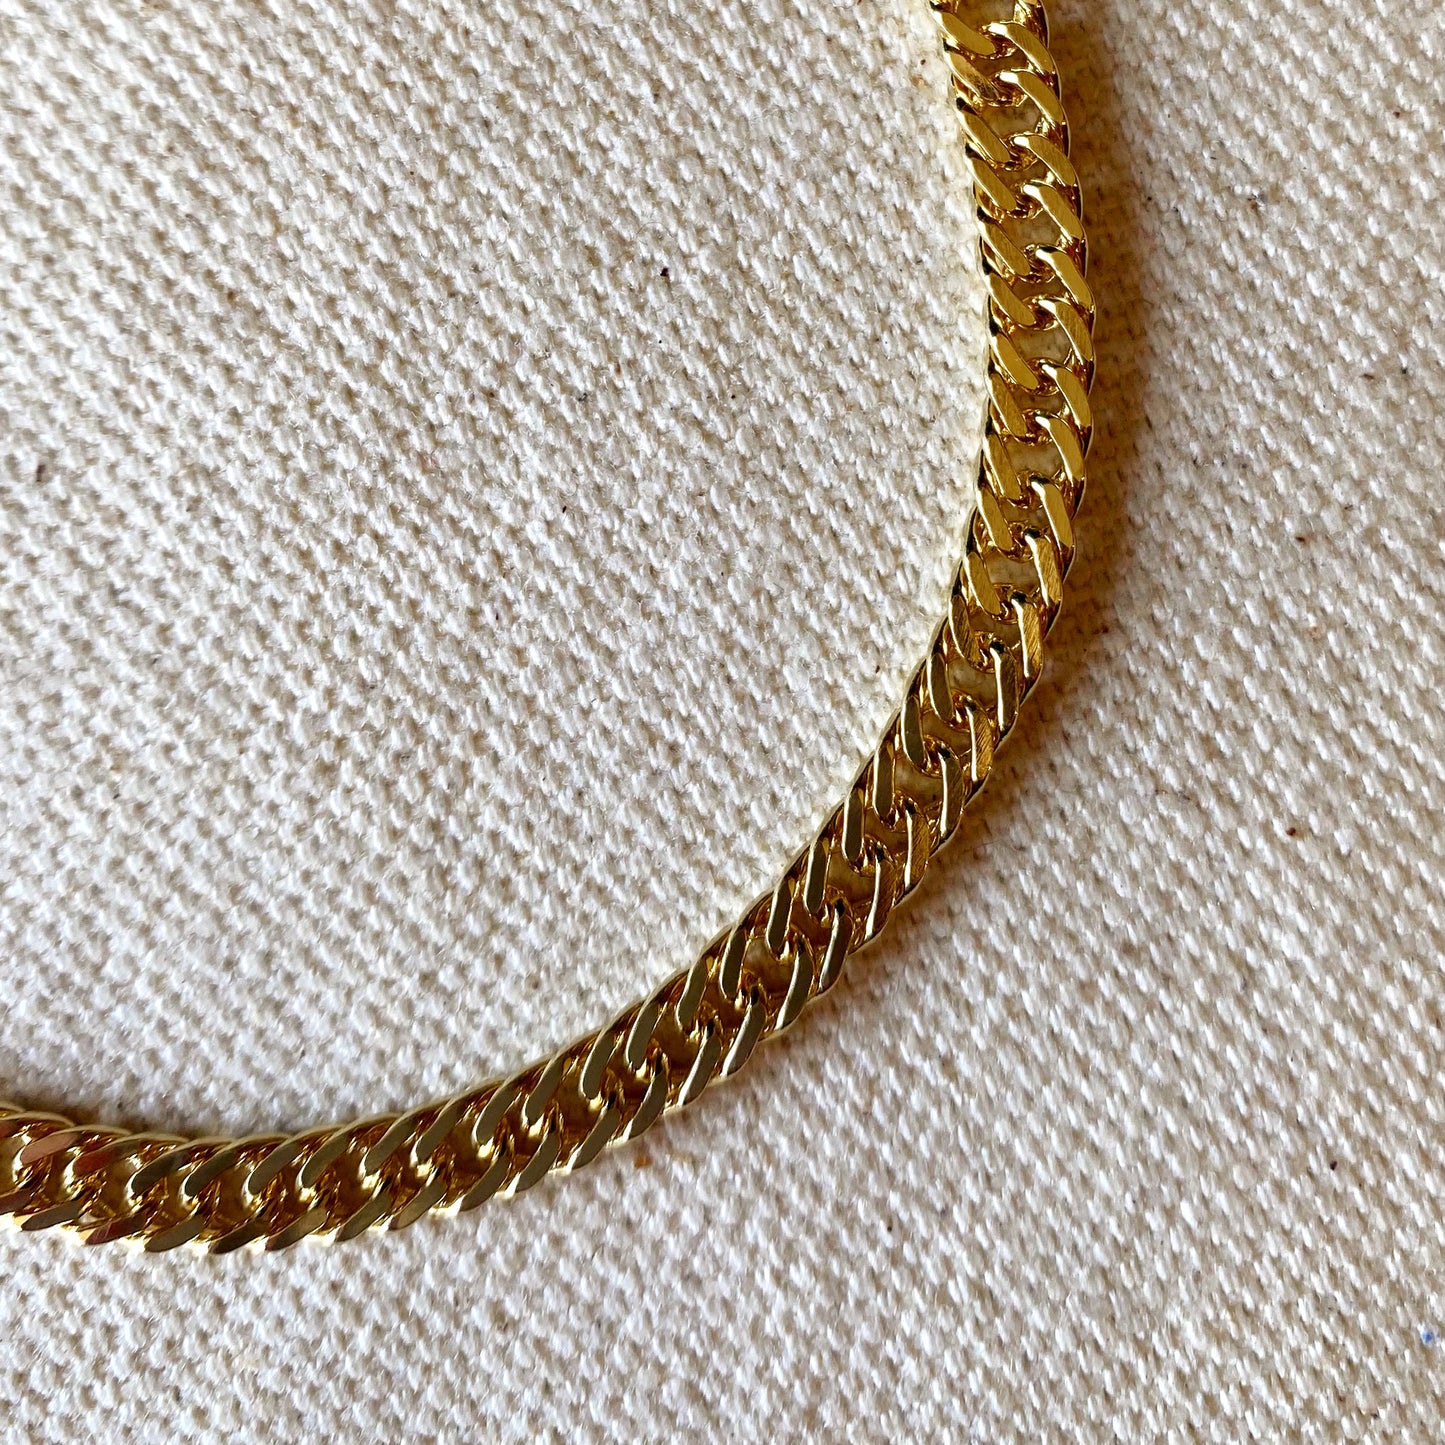 18k Gold Filled 4.0mm Curb Chain Bracelet